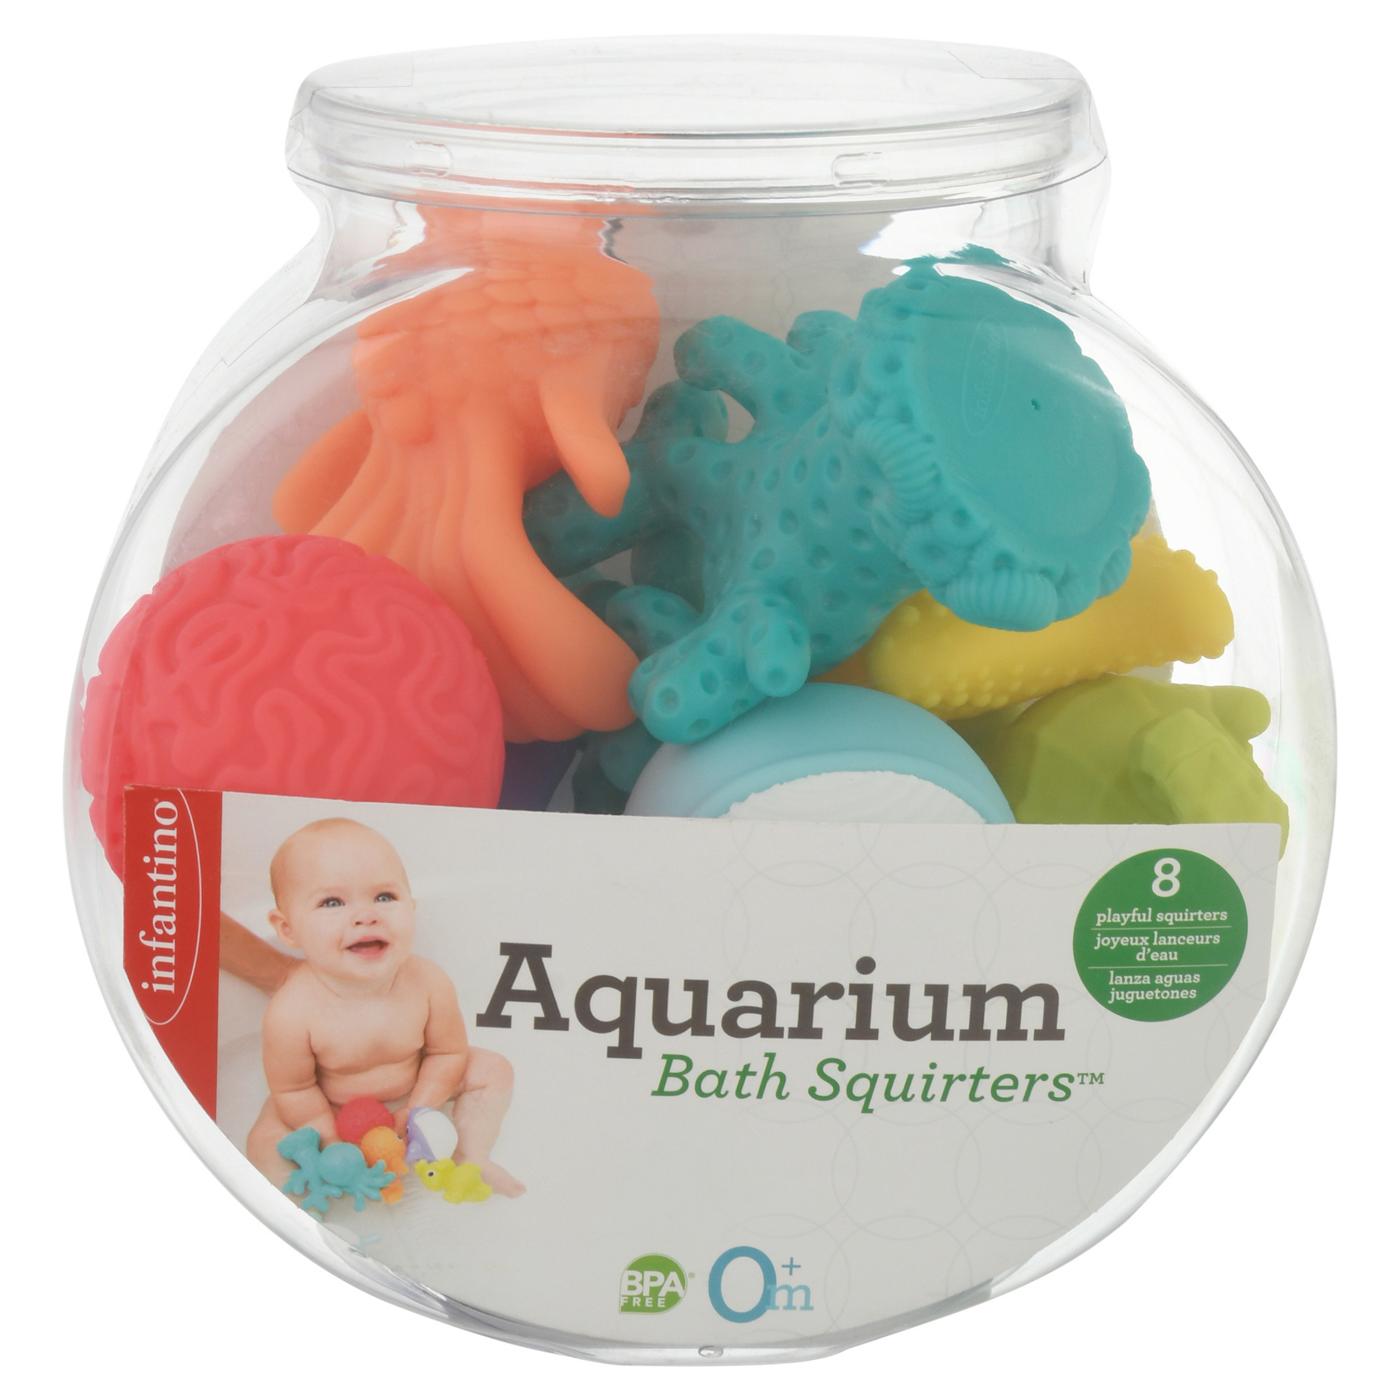 Infantino Aquarium Bath Squirters; image 1 of 2